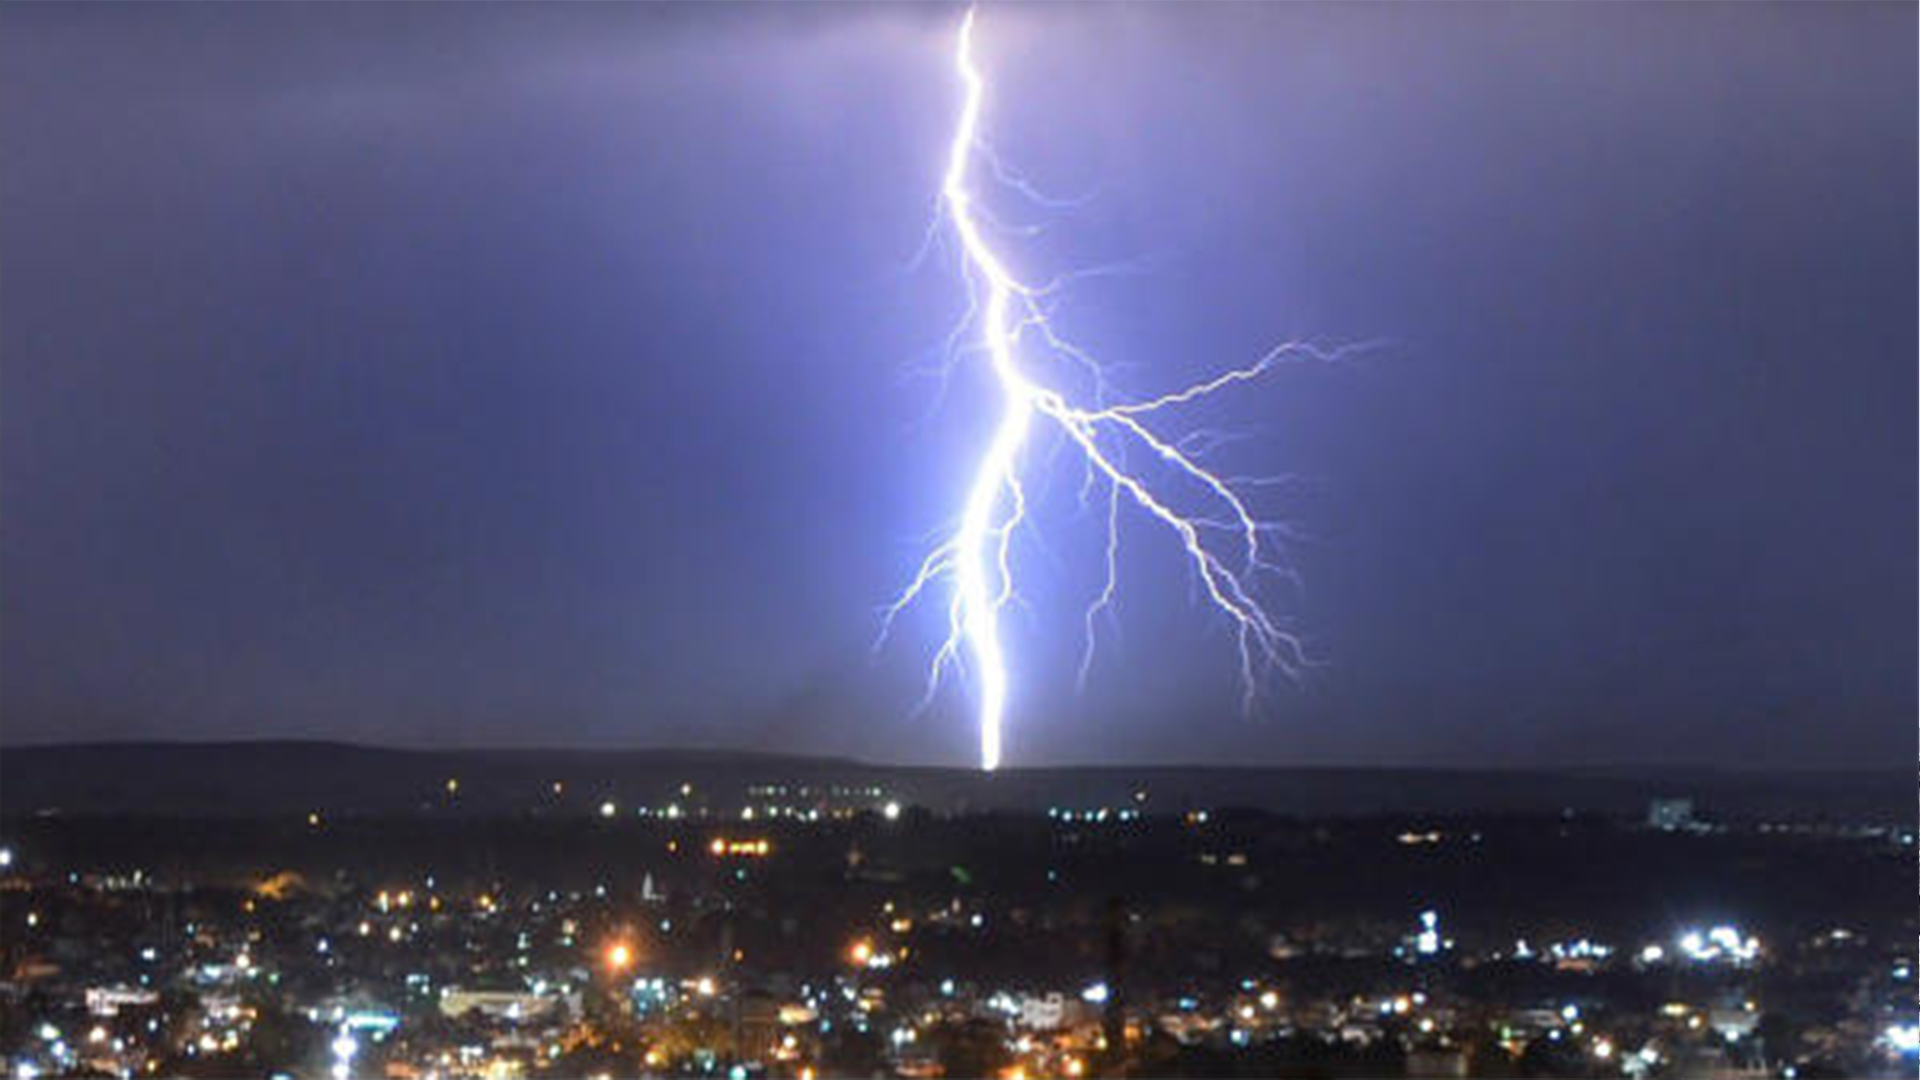 Lightning kills 83 in Bihar, India